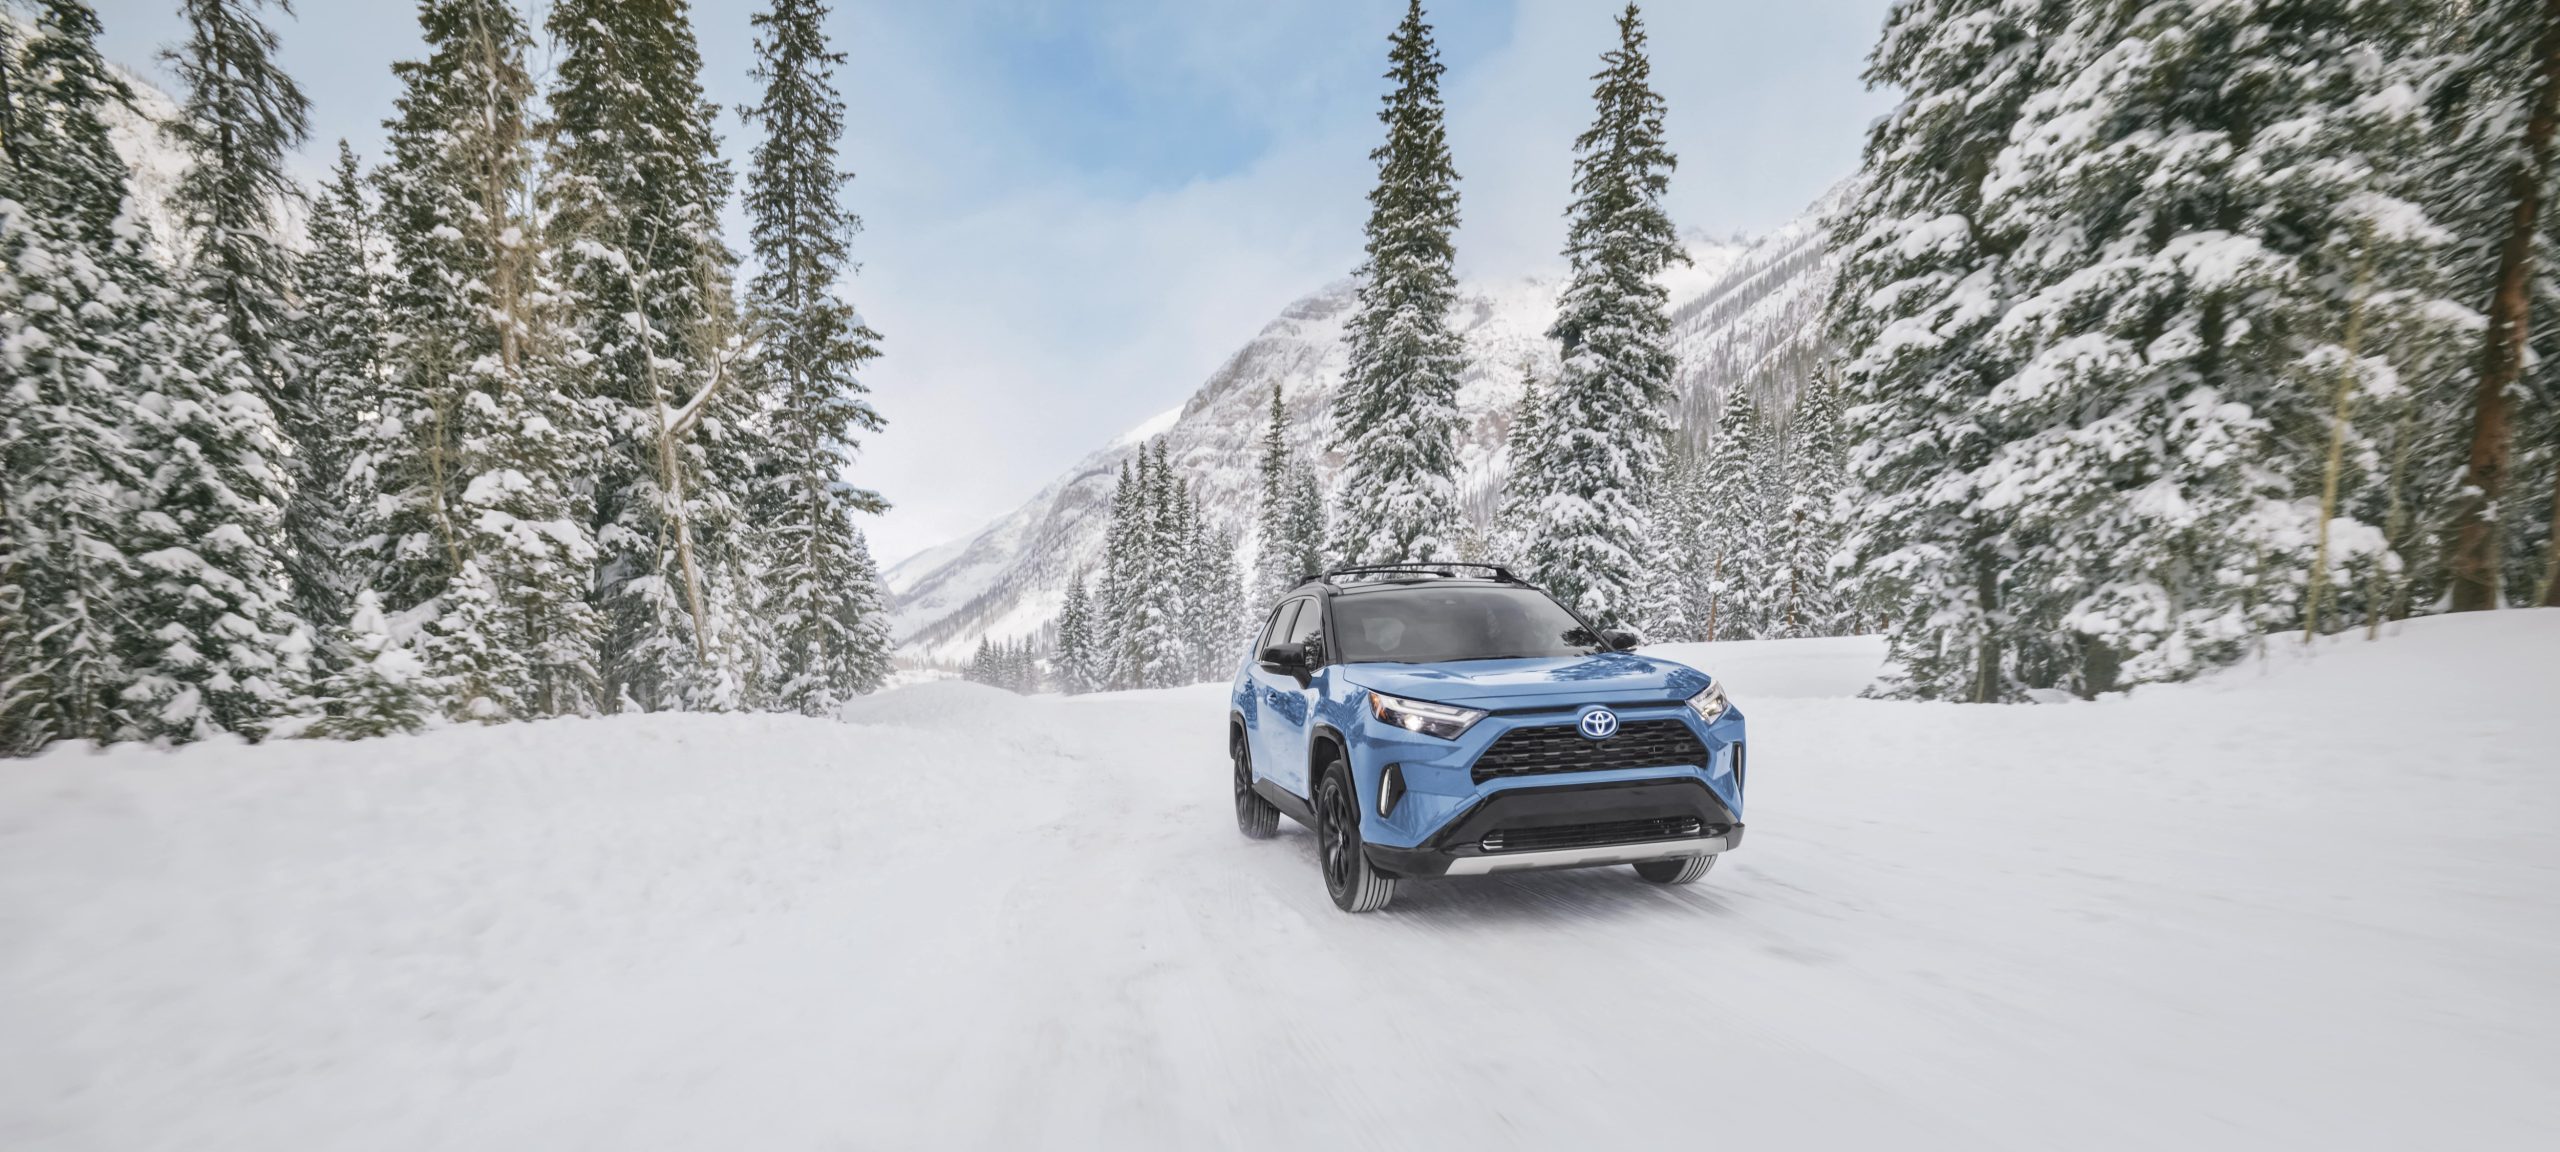 Toyota RAV4 Hybrid for snow